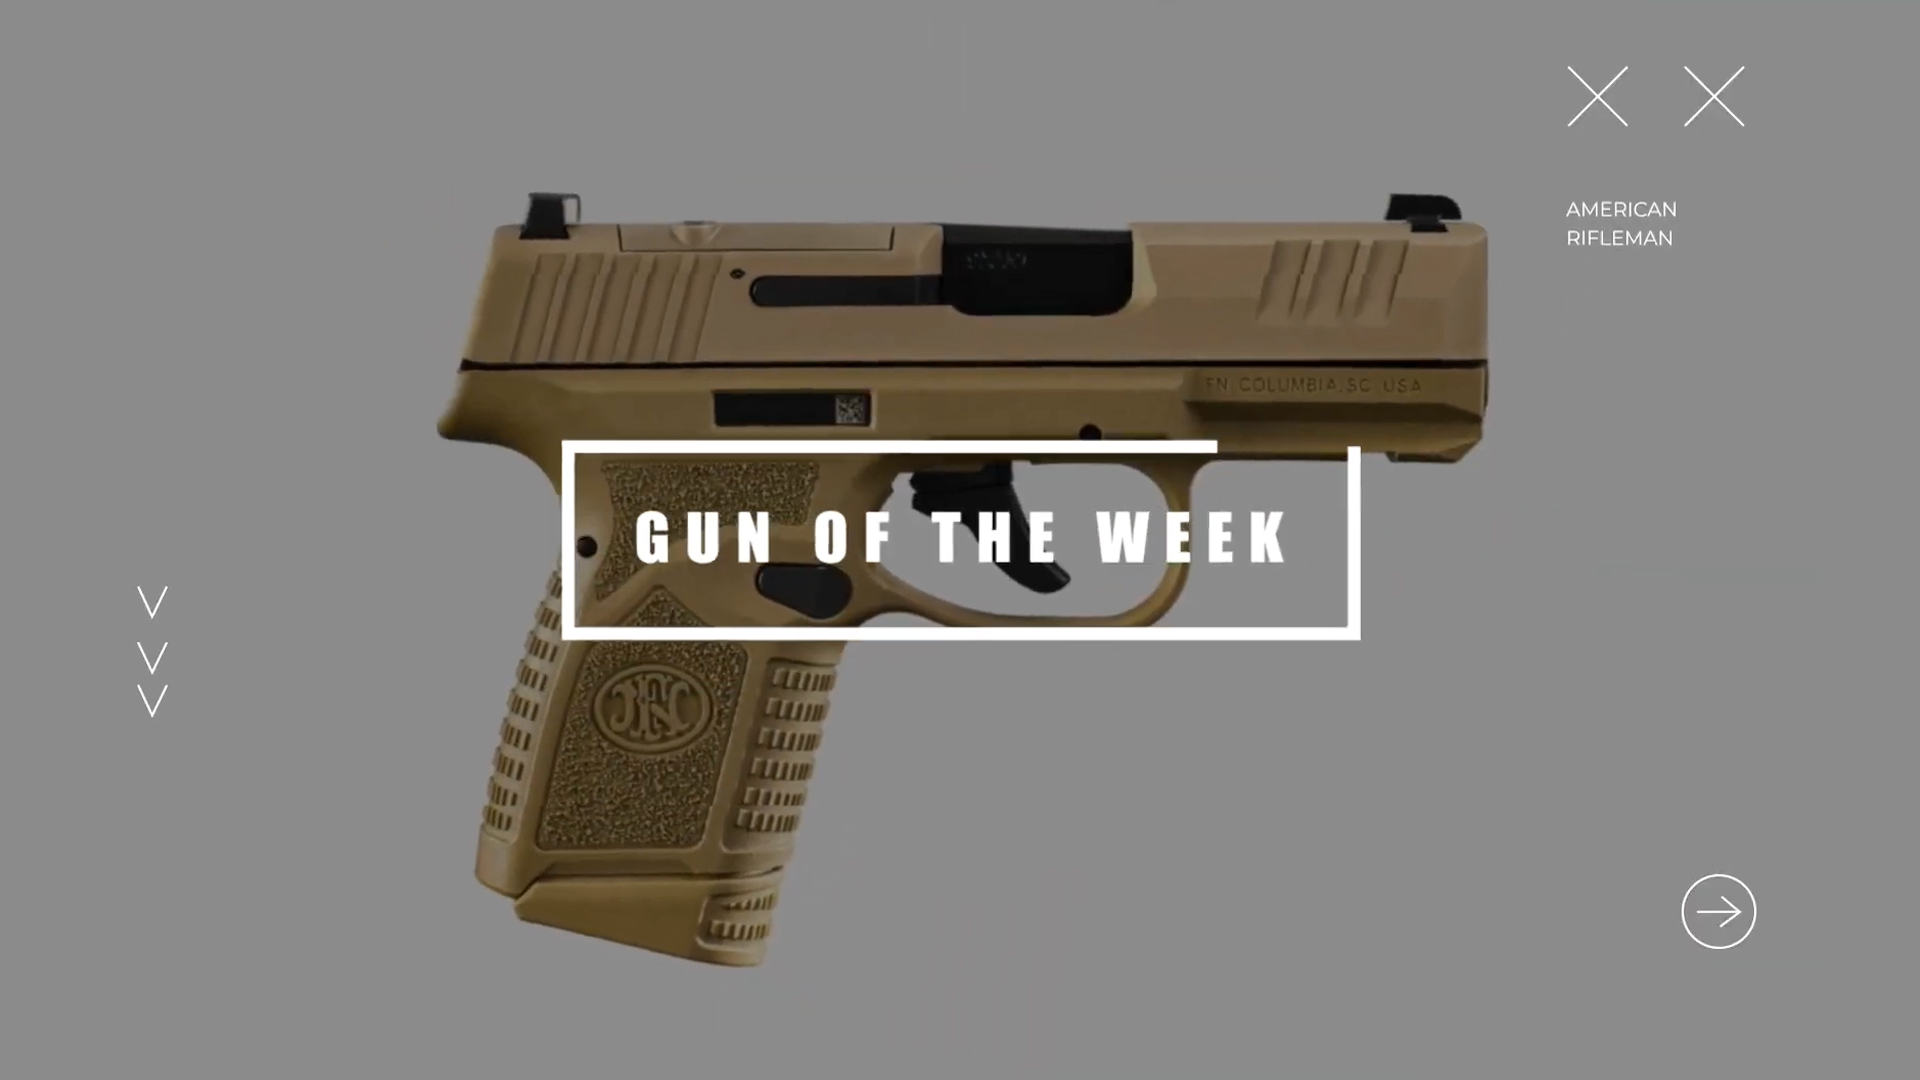 American Rifleman GUN OF THE WEEK title screen text overlay FN Reflex MRD handgun FDE color right-side view